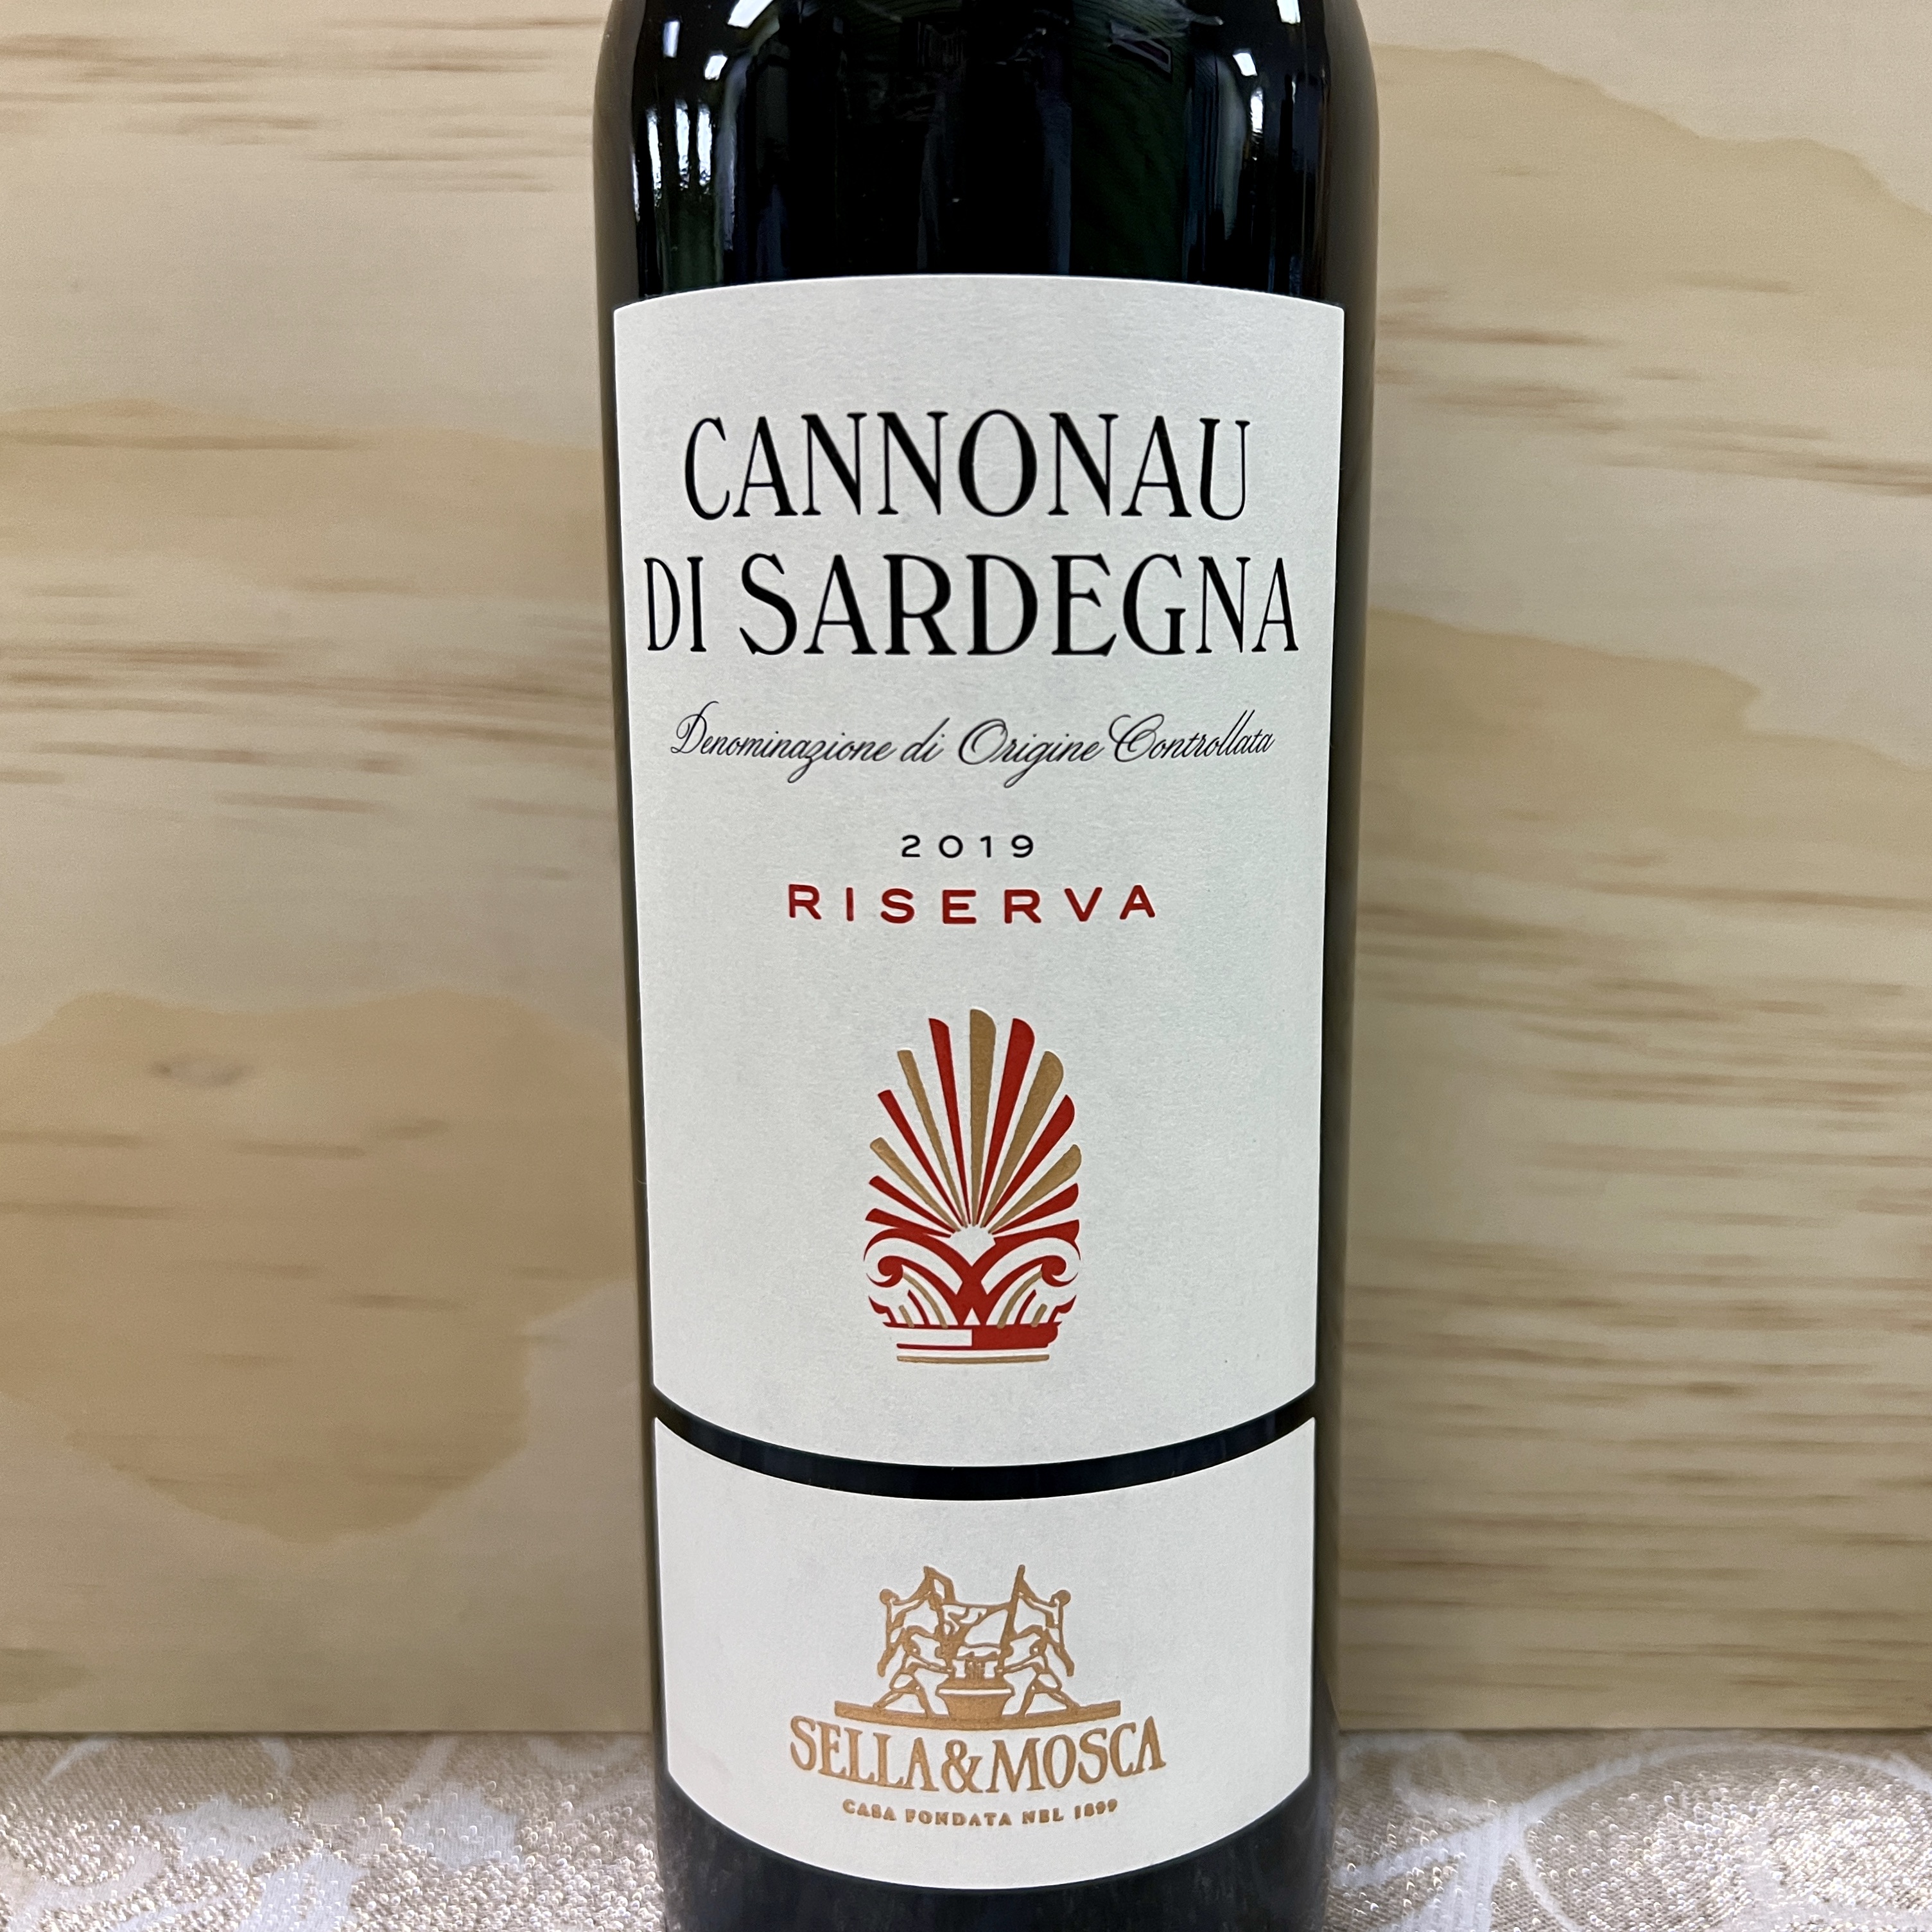 Sella & Mosca Cannonau Di Sardegna Reserva 2019